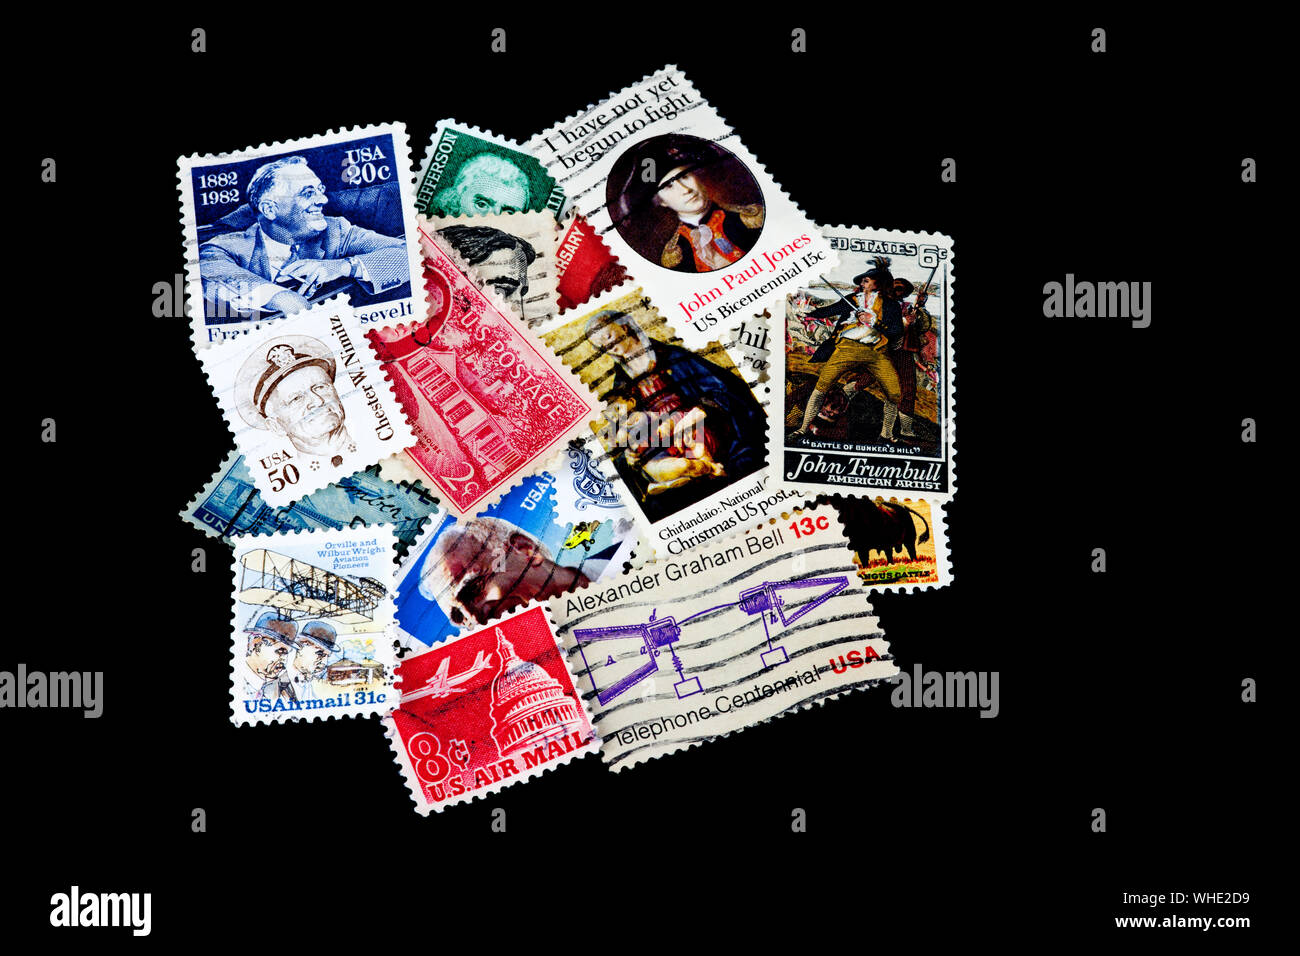 Un tas d'assortiment USA timbres-poste isolé sur un fond noir Banque D'Images